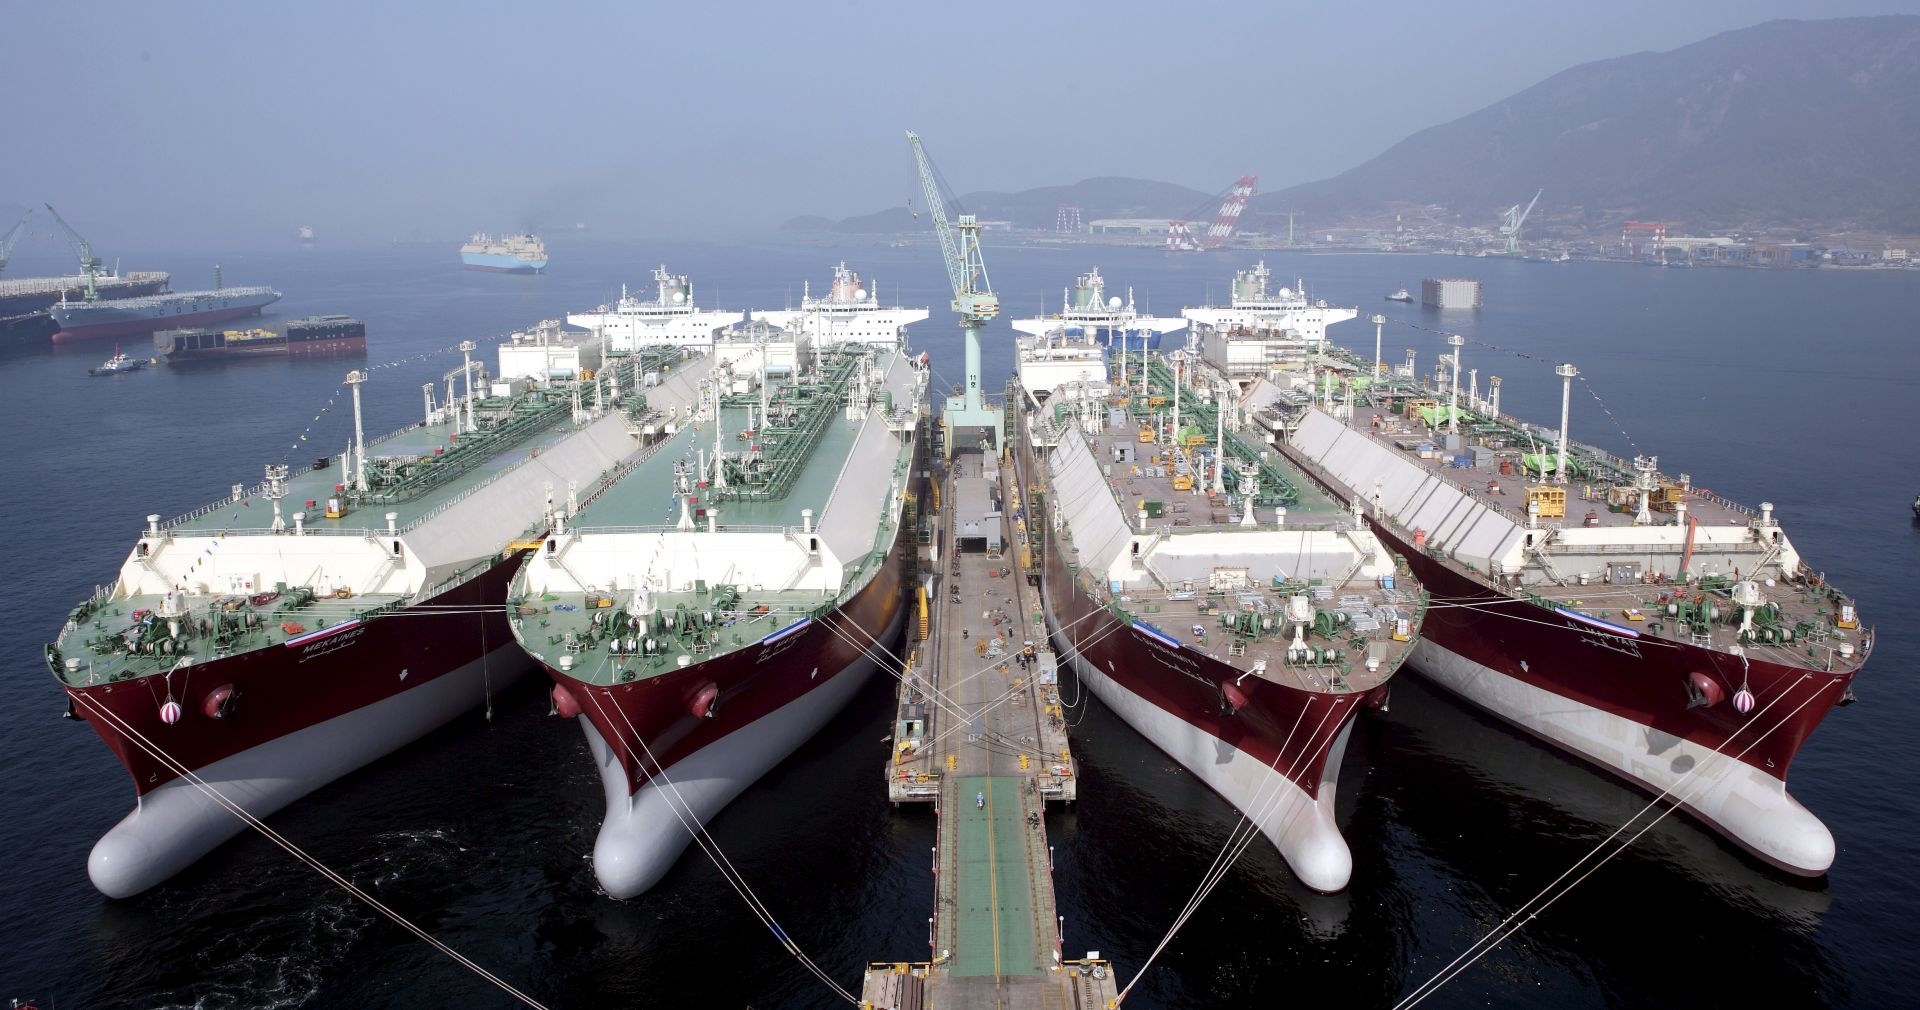 LNG Tankers At Shipyard - Samsung.jpg